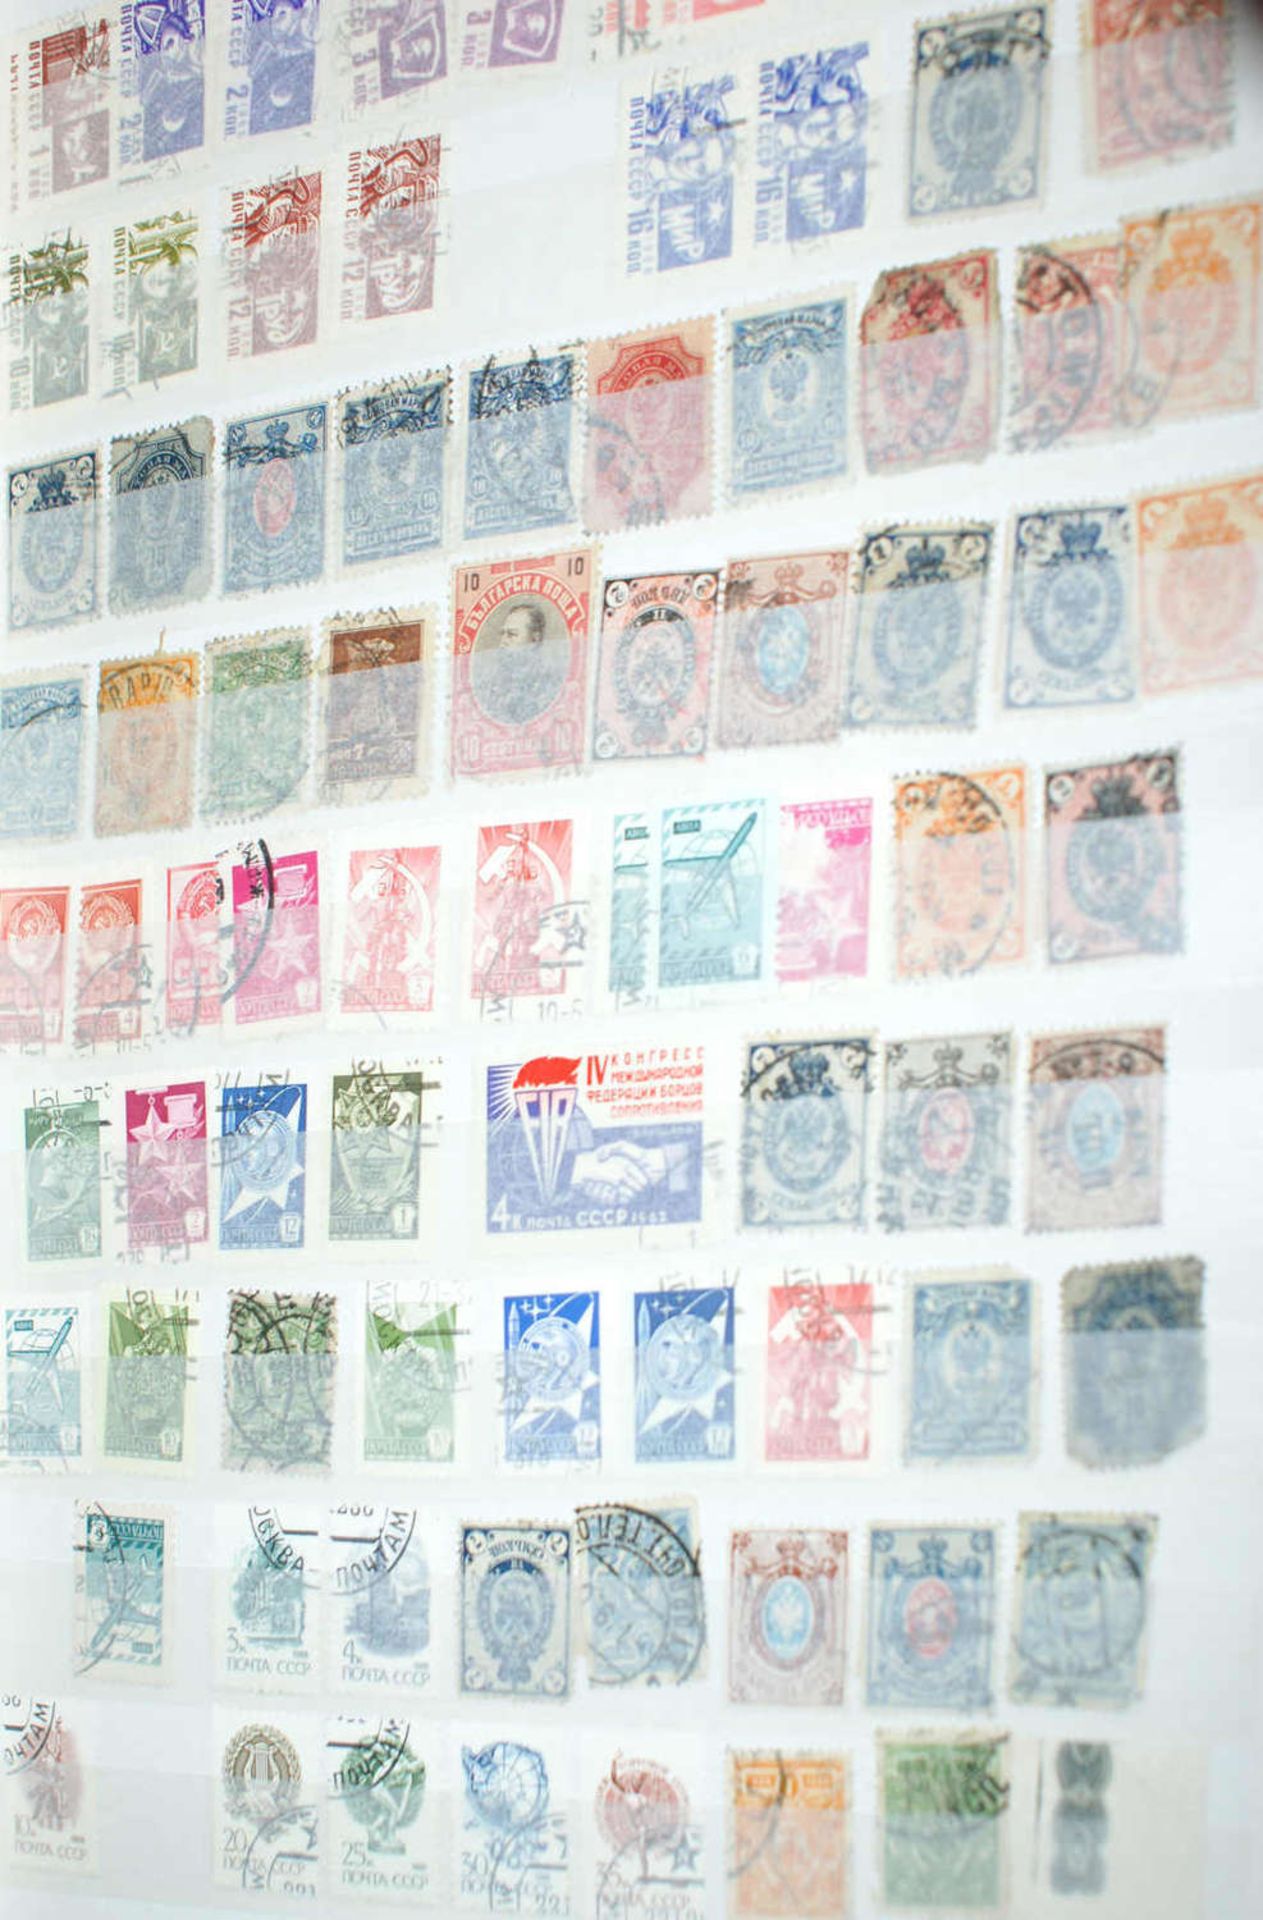 Europa - Briefmarken Dubletten Konvolut, bestehend aus 9 Alben, teilweise schlecht gelagert. - Bild 5 aus 5